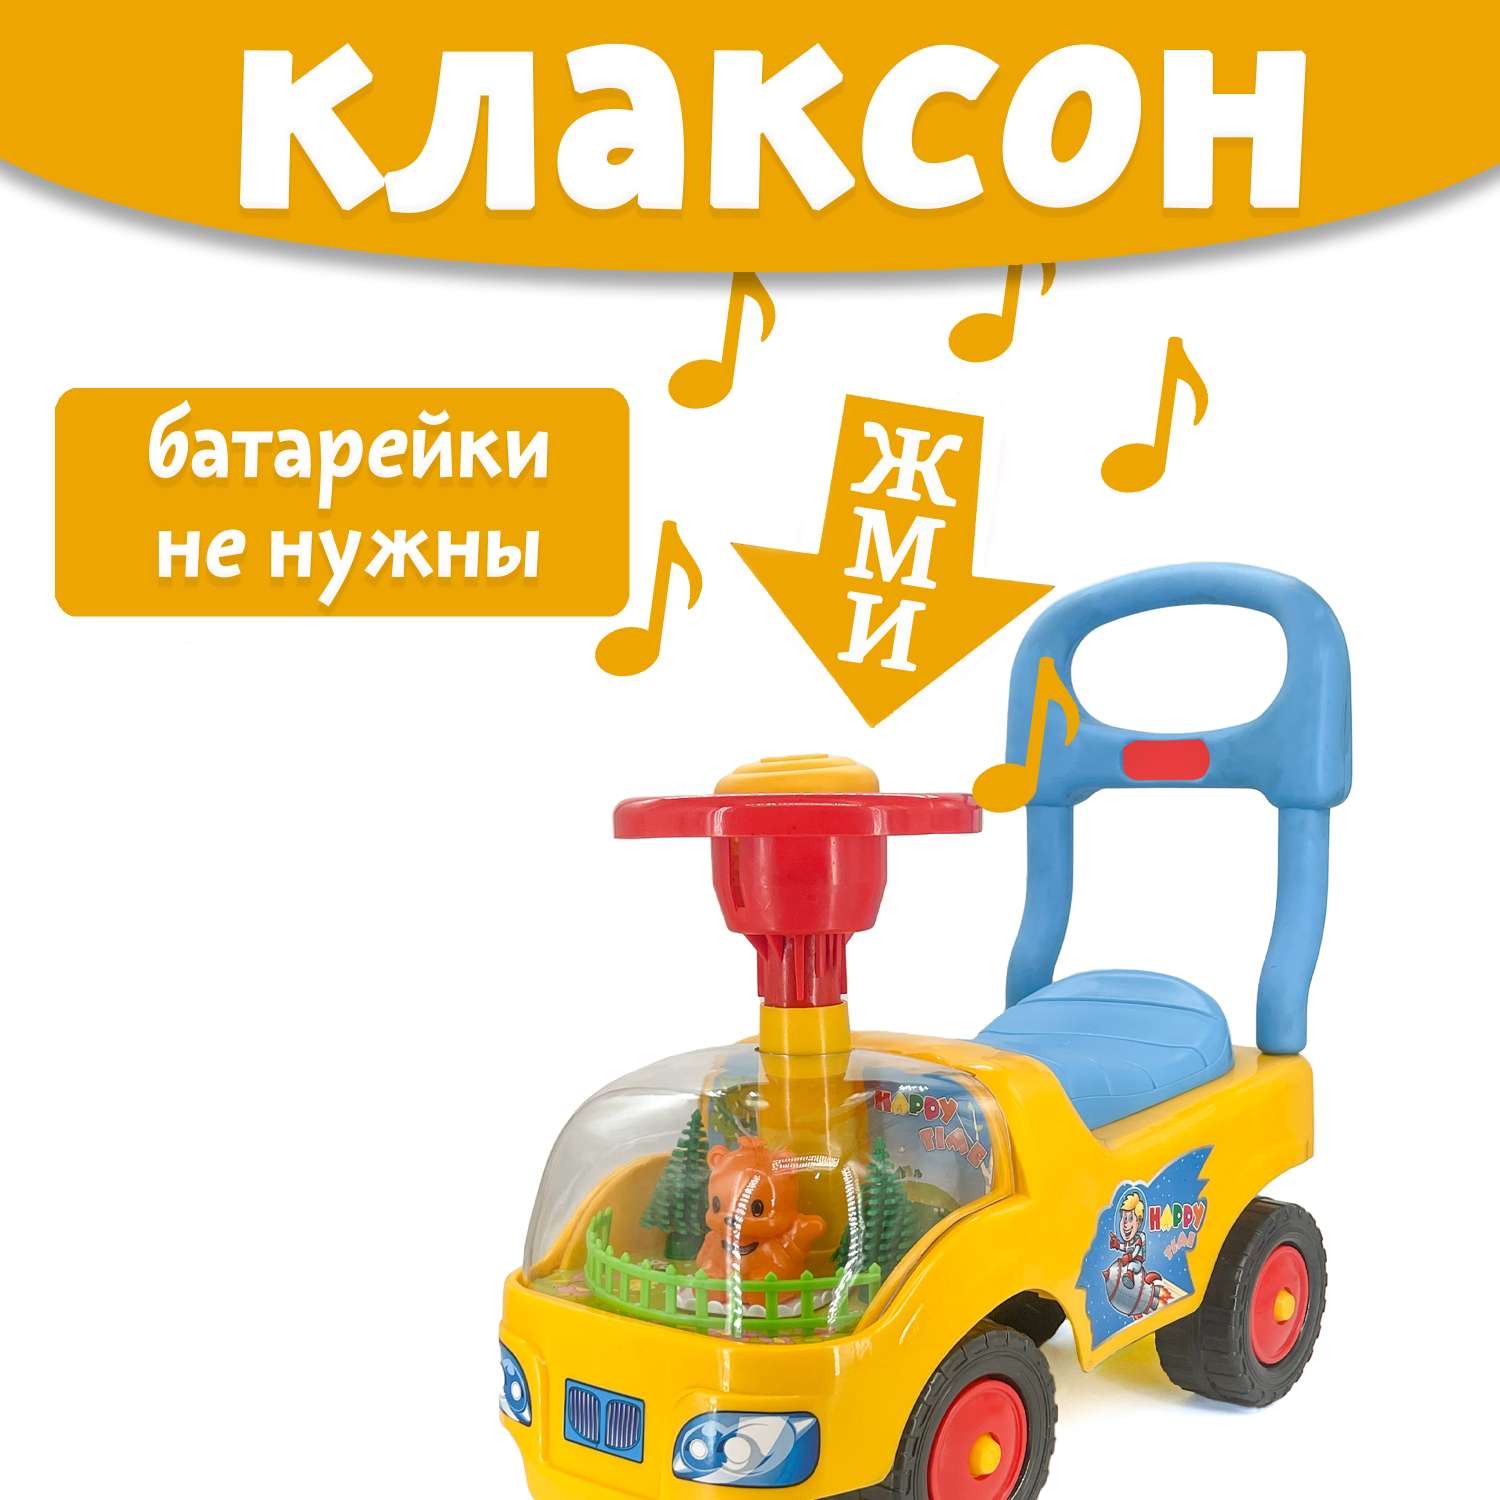 Машина каталка Нижегородская игрушка 134 Желтая - фото 2